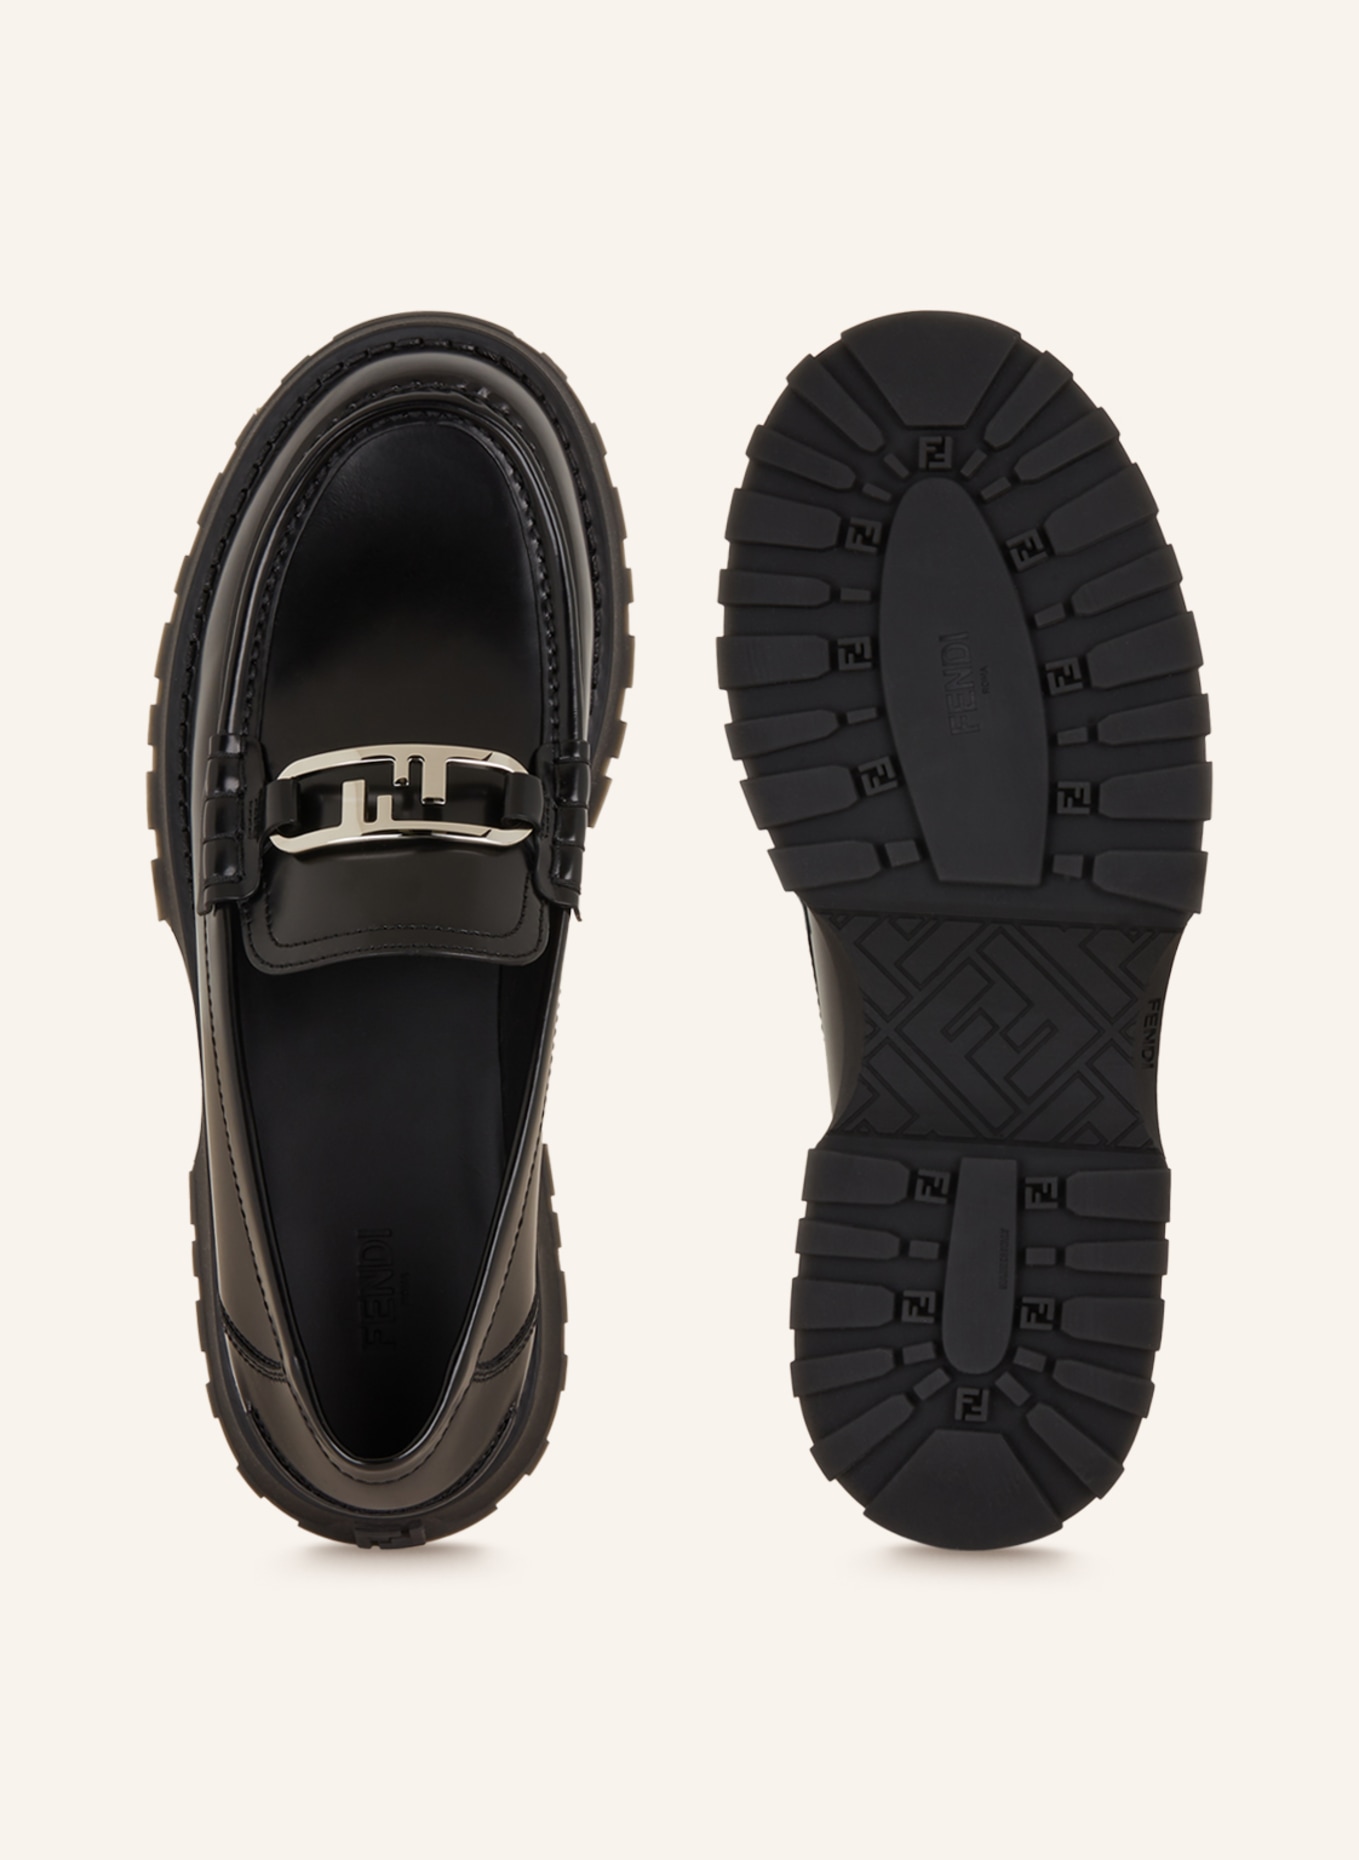 FENDI Loafers, Color: BLACK (Image 5)